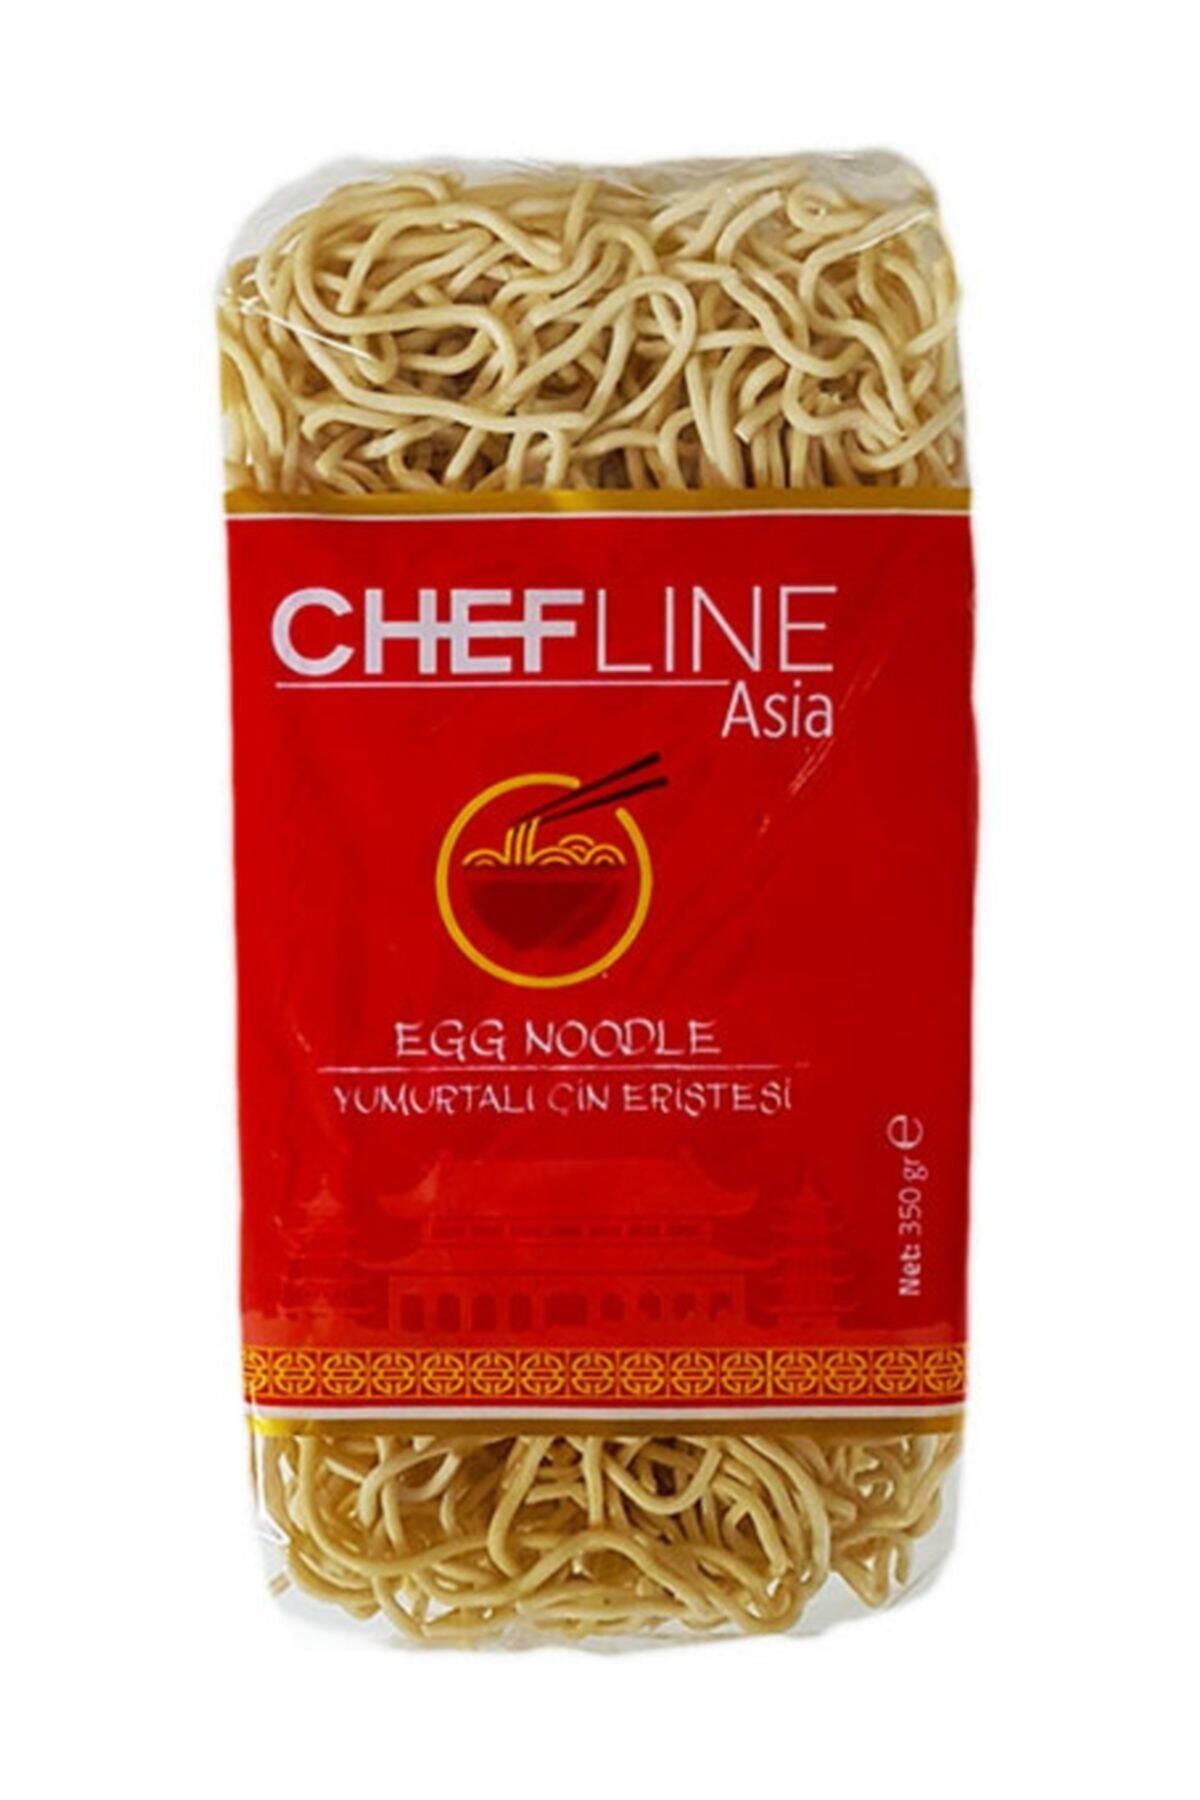 Asia Chefline Noodle 350 gr